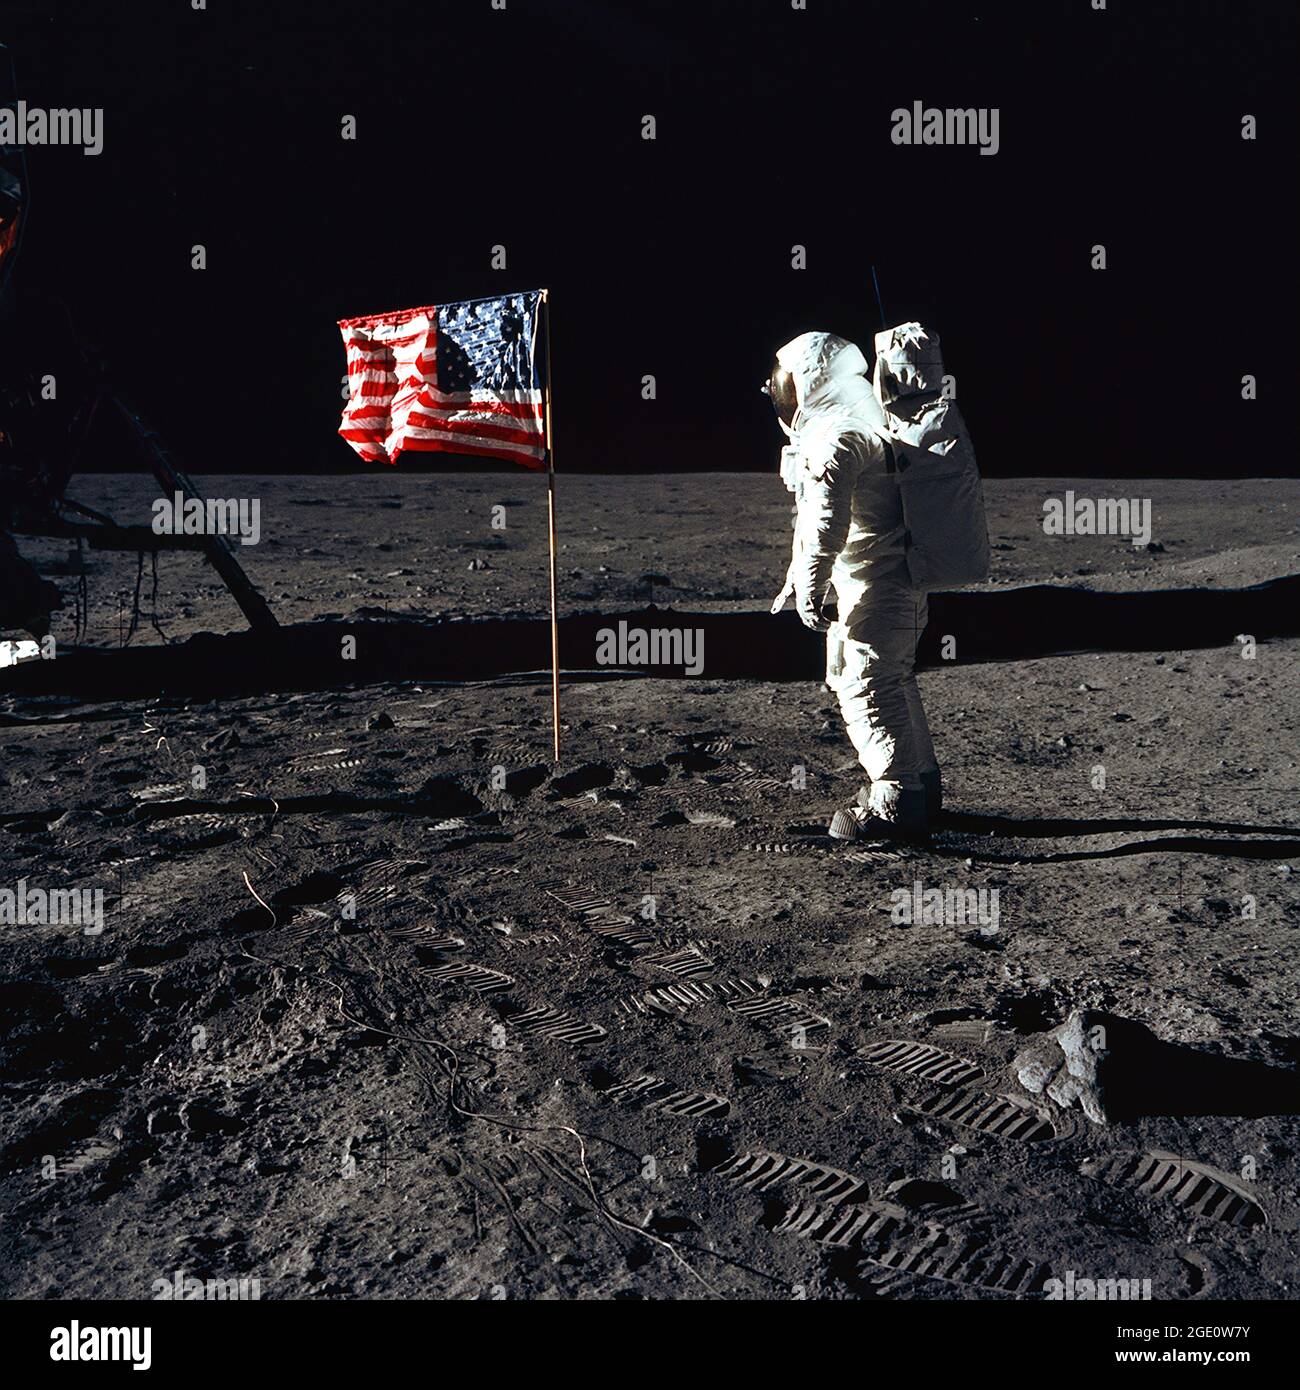 Astronaut Buzz Aldrin, Mondmodulpilot der ersten Mondlandemission, posiert für ein Foto neben der US-Flagge während einer Apollo 11 Extravehicular Activity (EVA) auf der Mondoberfläche. Die Mondlandefähre (LM) befindet sich auf der linken Seite, und die Fußabdrücke der Astronauten sind im Boden des Mondes deutlich sichtbar. Astronaut Neil A. Armstrong, Kommandant, machte dieses Bild mit einer 70mm Hasselblad Mondoberflächenkamera. Während die Astronauten Armstrong und Aldrin in der LM, dem „Adler“, abstiegen, um die Region „Sea of Tranquility“ des Mondes zu erkunden, unterzog sich Astronaut Michael Collins. Stockfoto